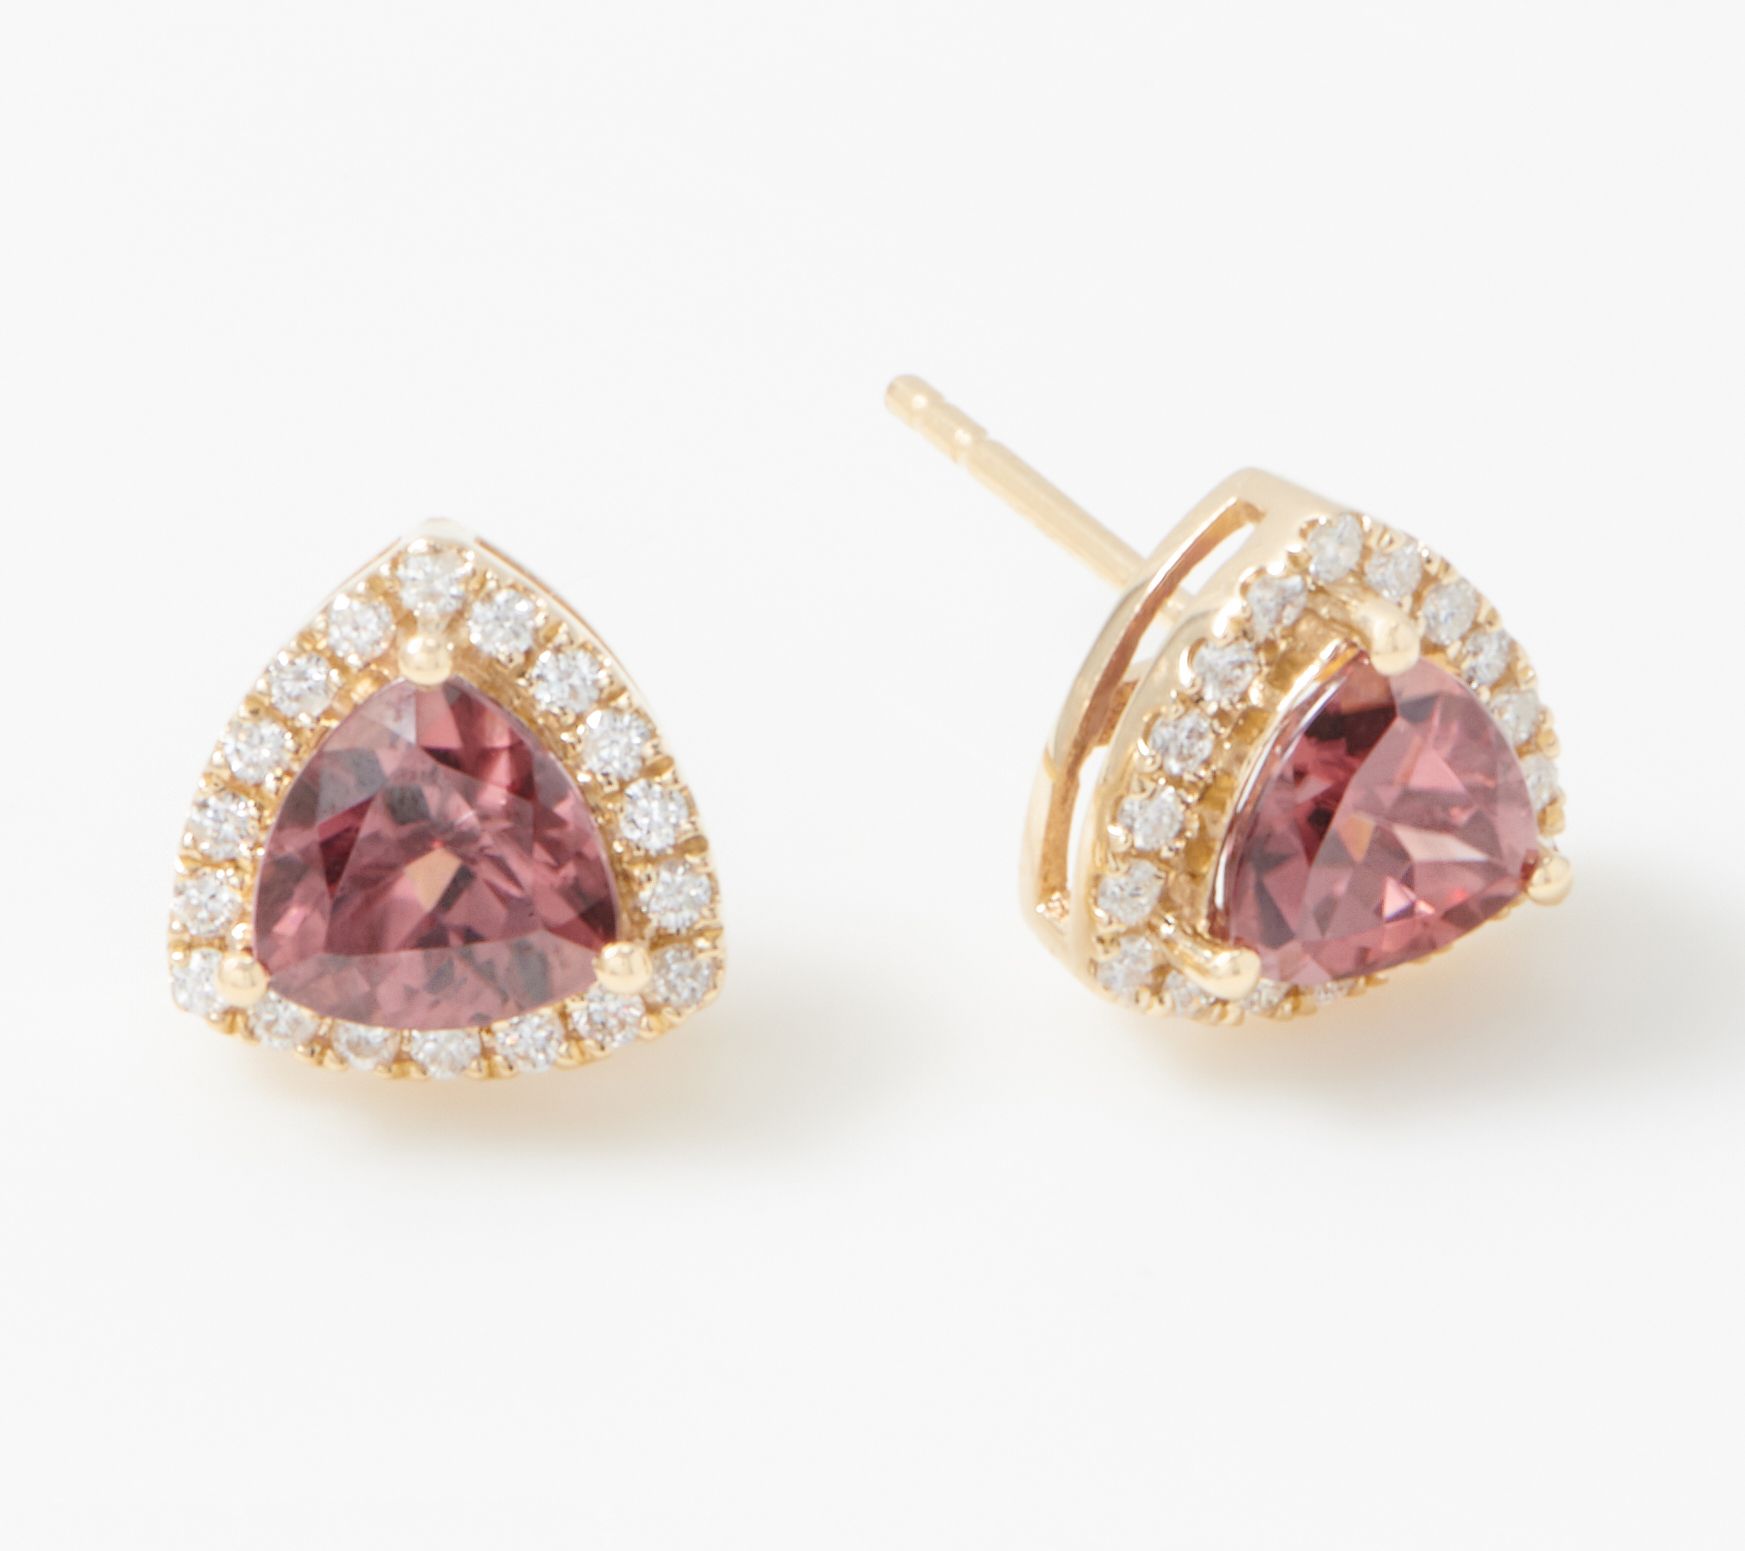 Trillion Cut Pink Zircon Diamond Stud Earrings 1 85 Cttw 14k Gold